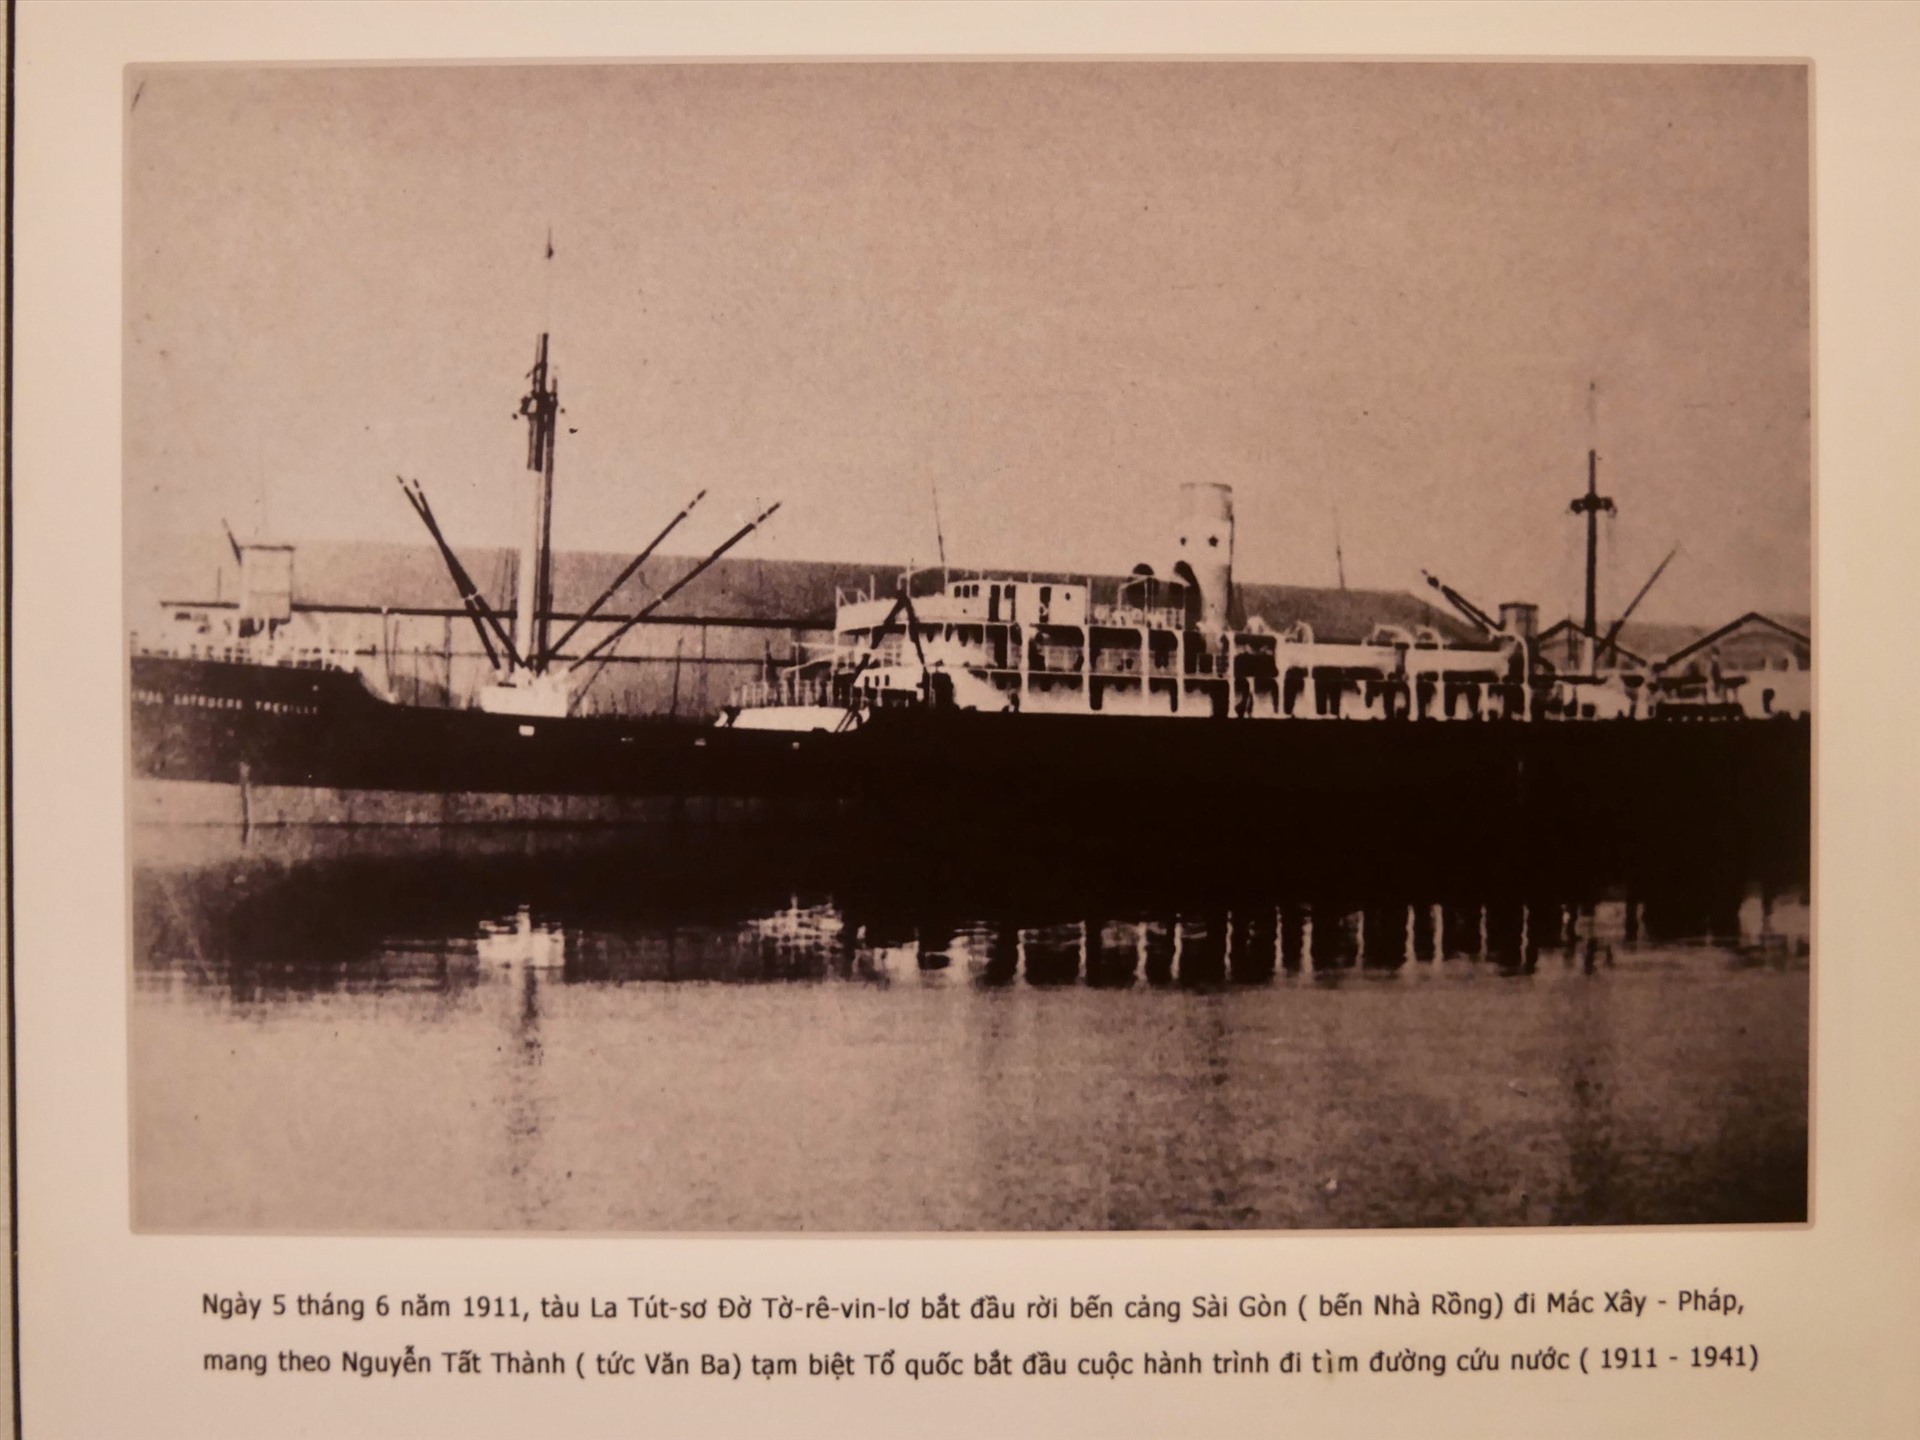 Hình ảnh về chiếc tàu La Tút-sơ Đờ Tờ-rê-vin-lơ, nơi Bác Hồ làm công việc phụ bếp để đi tìm đường cứu nước